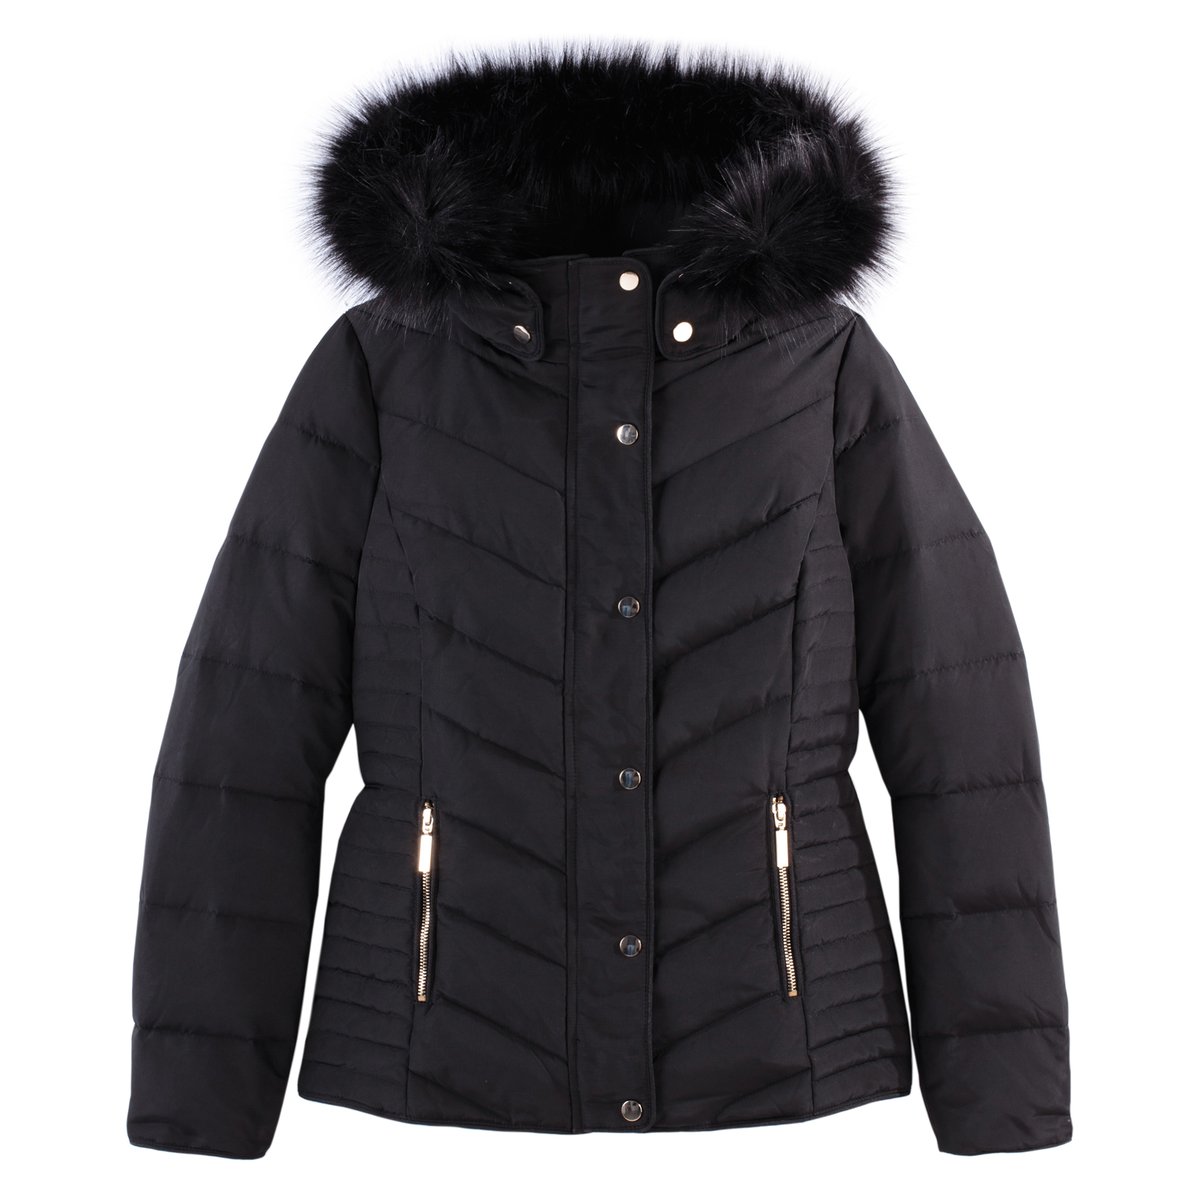 Куртка LaRedoute С наполнителем из натурального пуха 34 (FR) - 40 (RUS) черный, размер 34 (FR) - 40 (RUS) С наполнителем из натурального пуха 34 (FR) - 40 (RUS) черный - фото 5